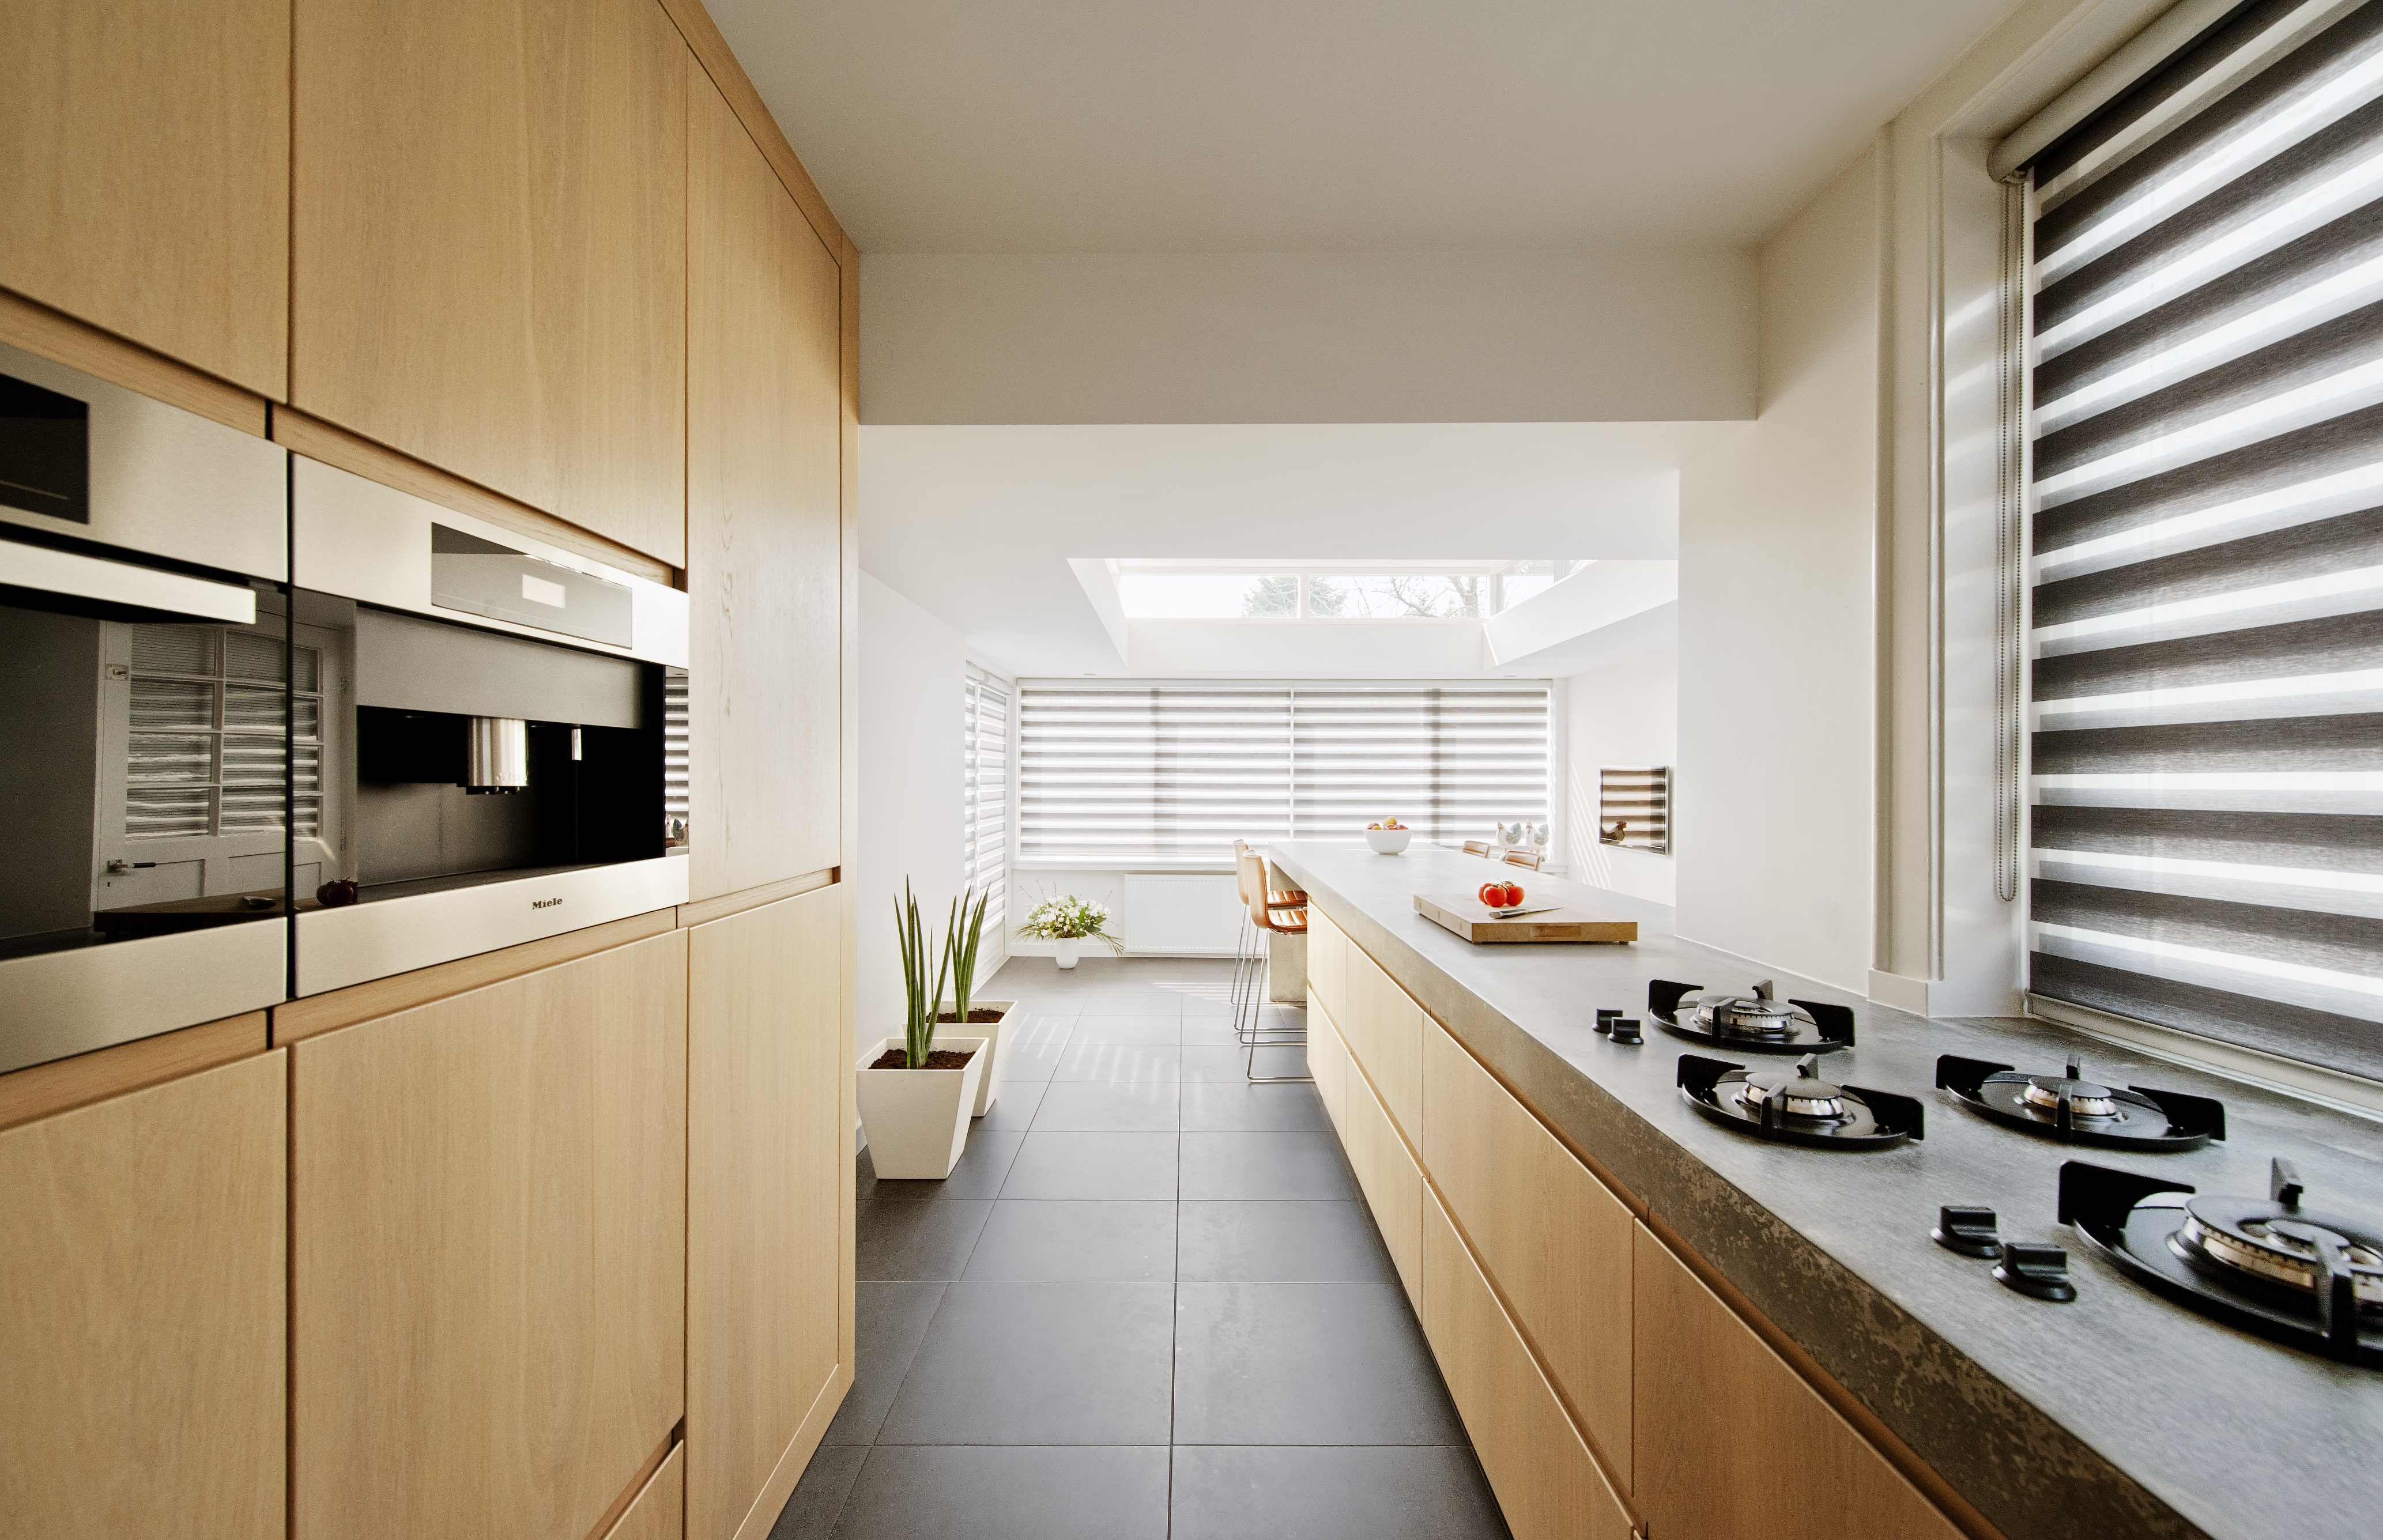 Ontwerp voor moderne keuken met betonnen aanrecht in eenjaren 30 villa in Naarden door architectenbureau Maxim Winkelaar uit Amsterdam.